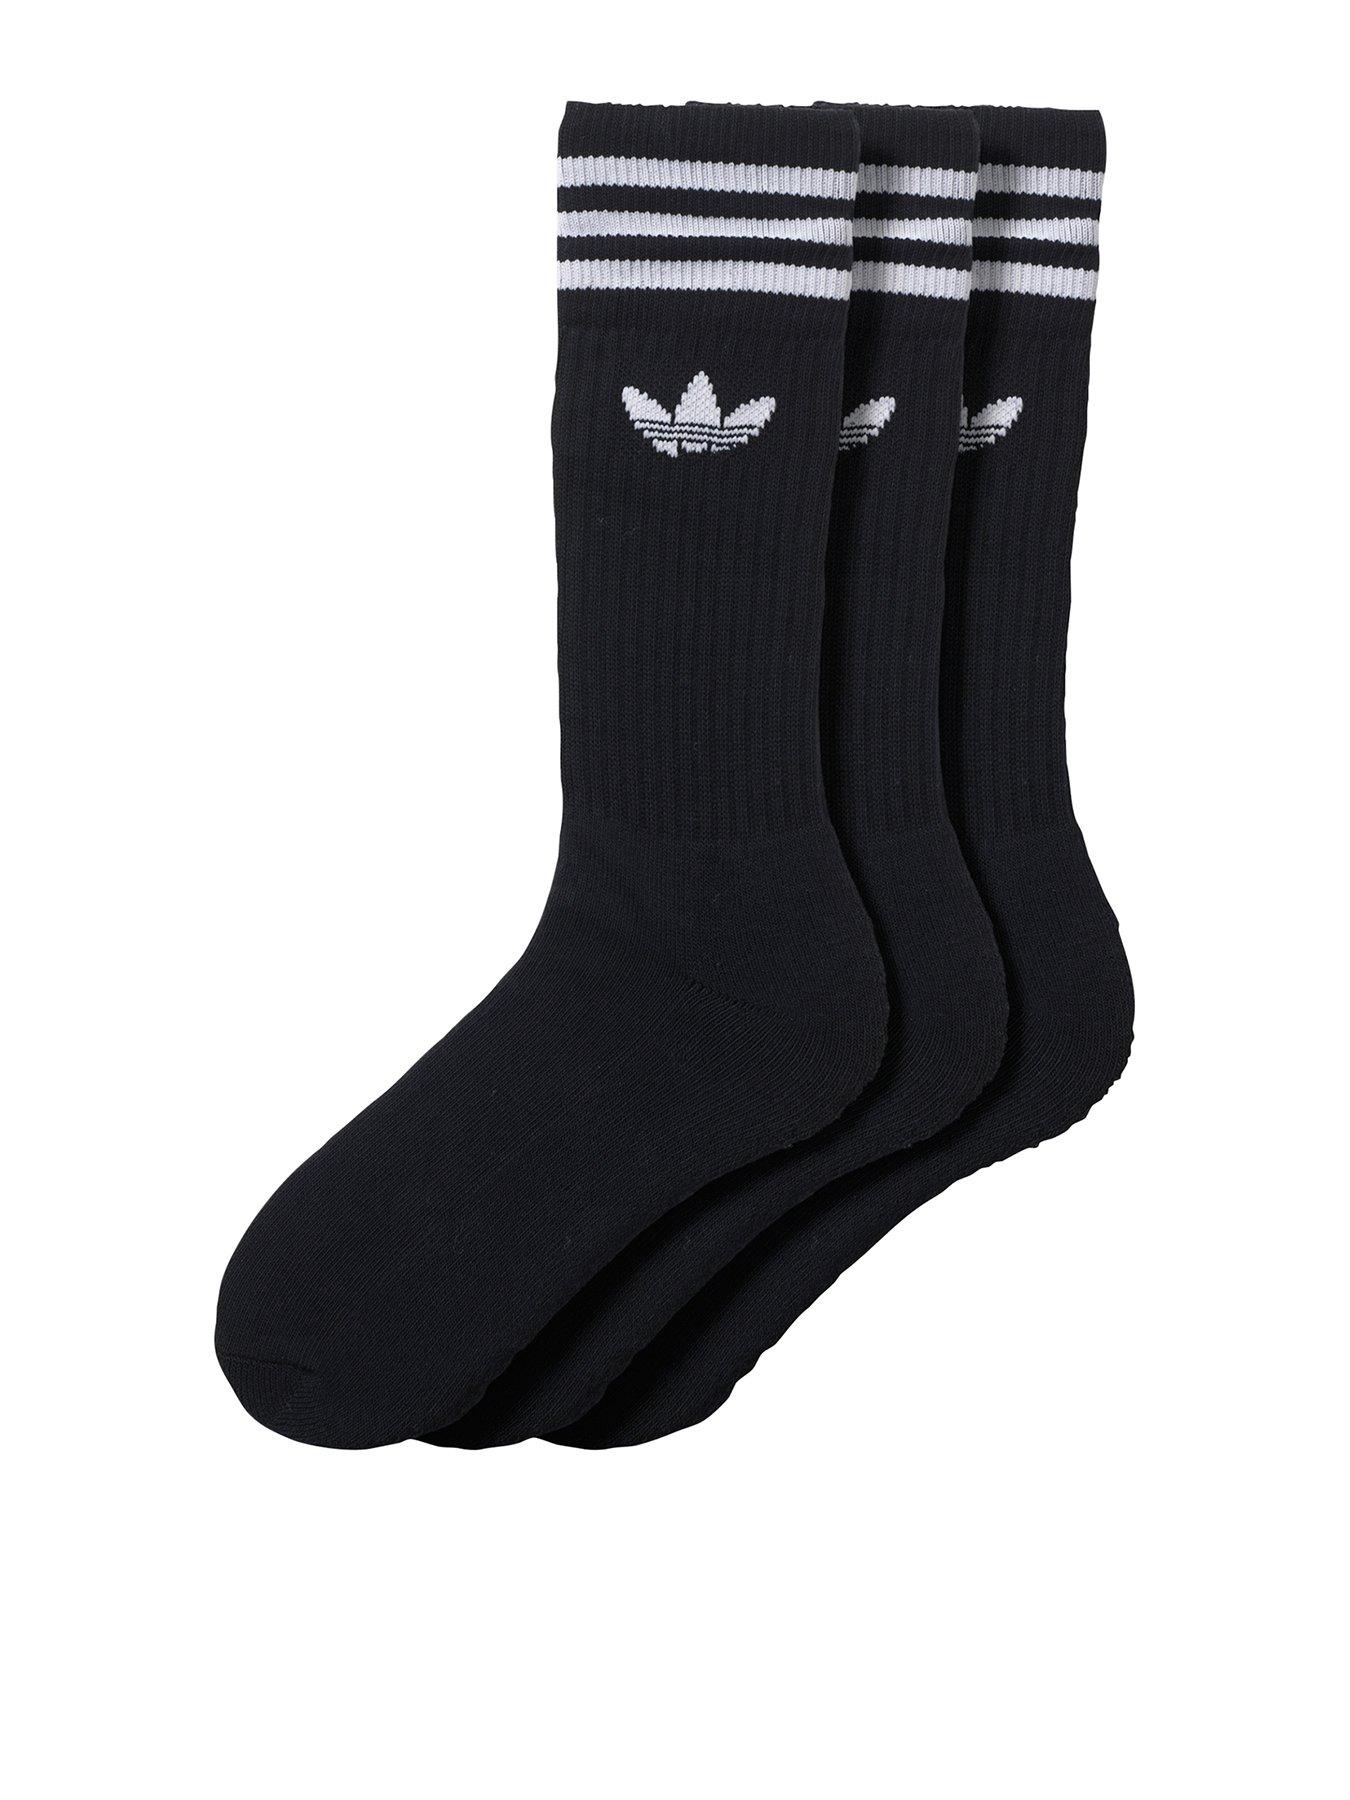 3 pack adidas socks